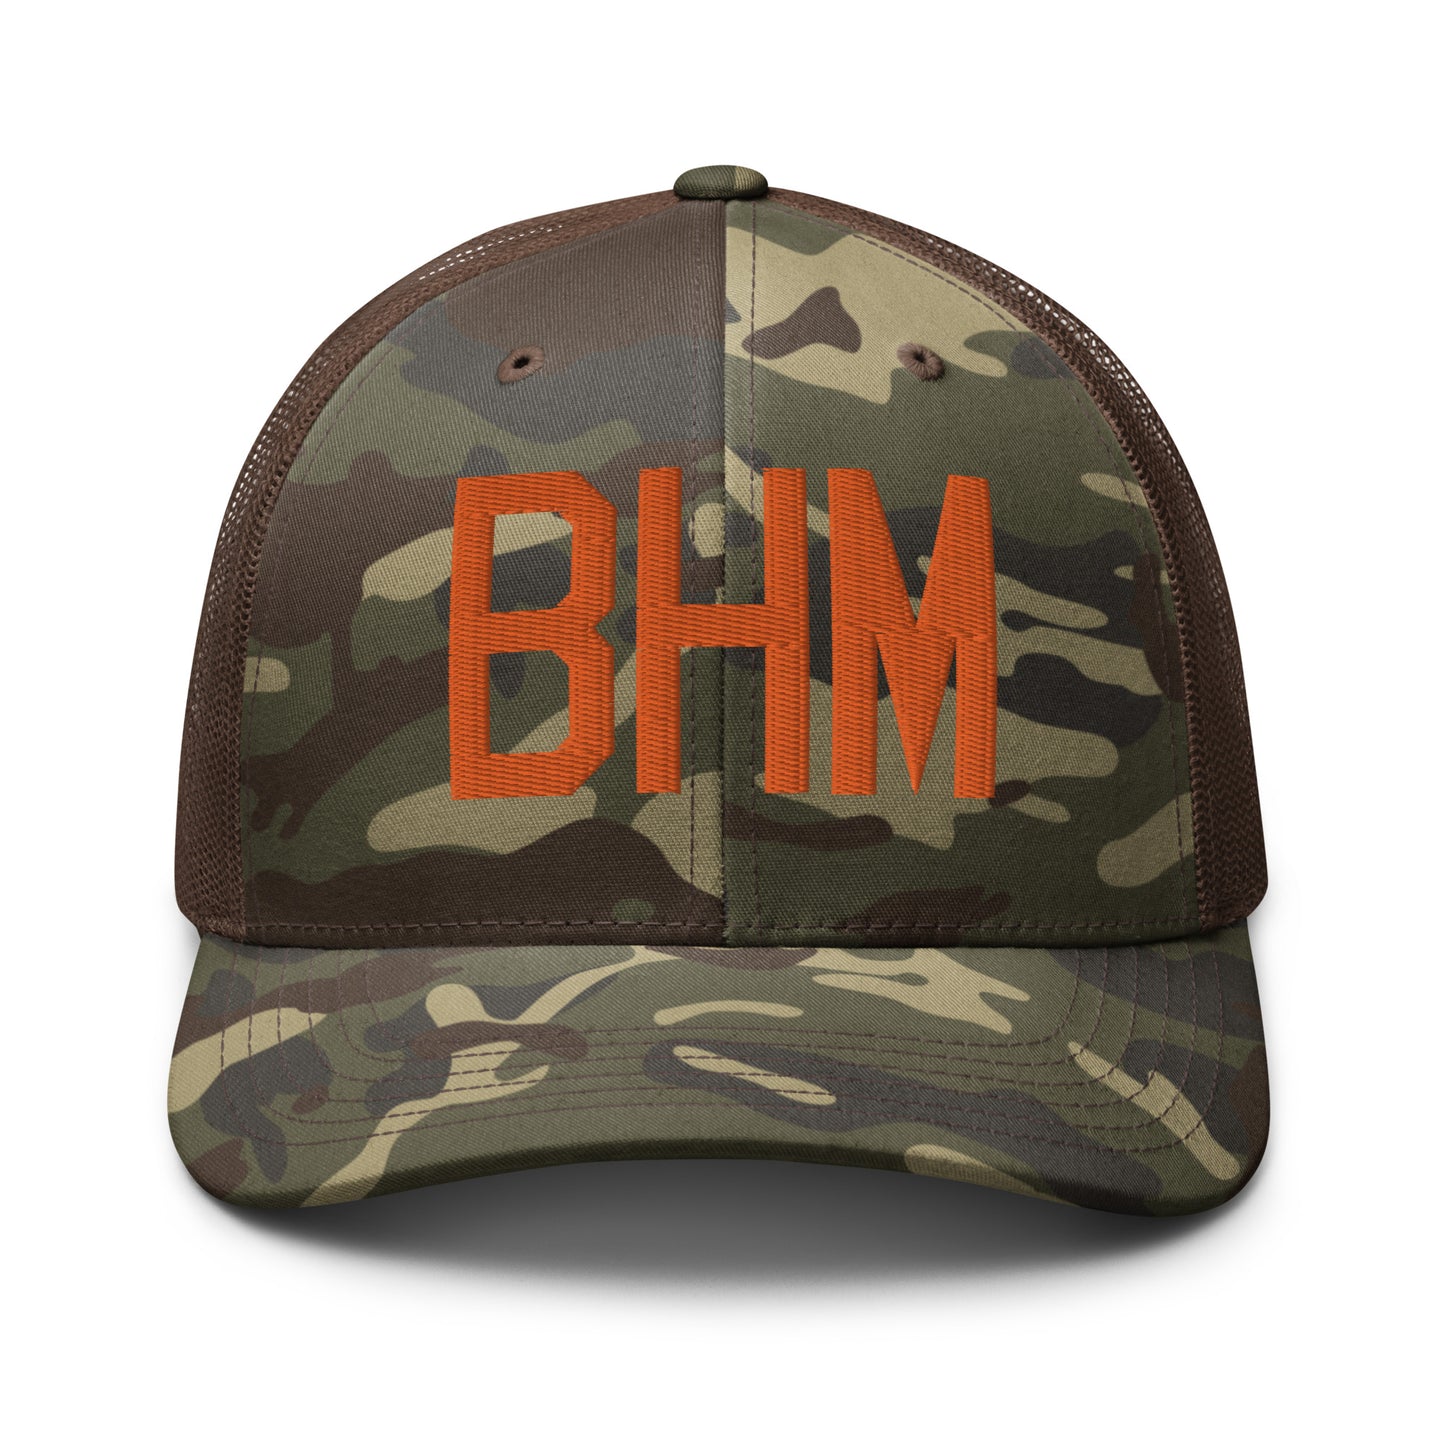 Airport Code Camouflage Trucker Hat - Orange • BHM Birmingham • YHM Designs - Image 13